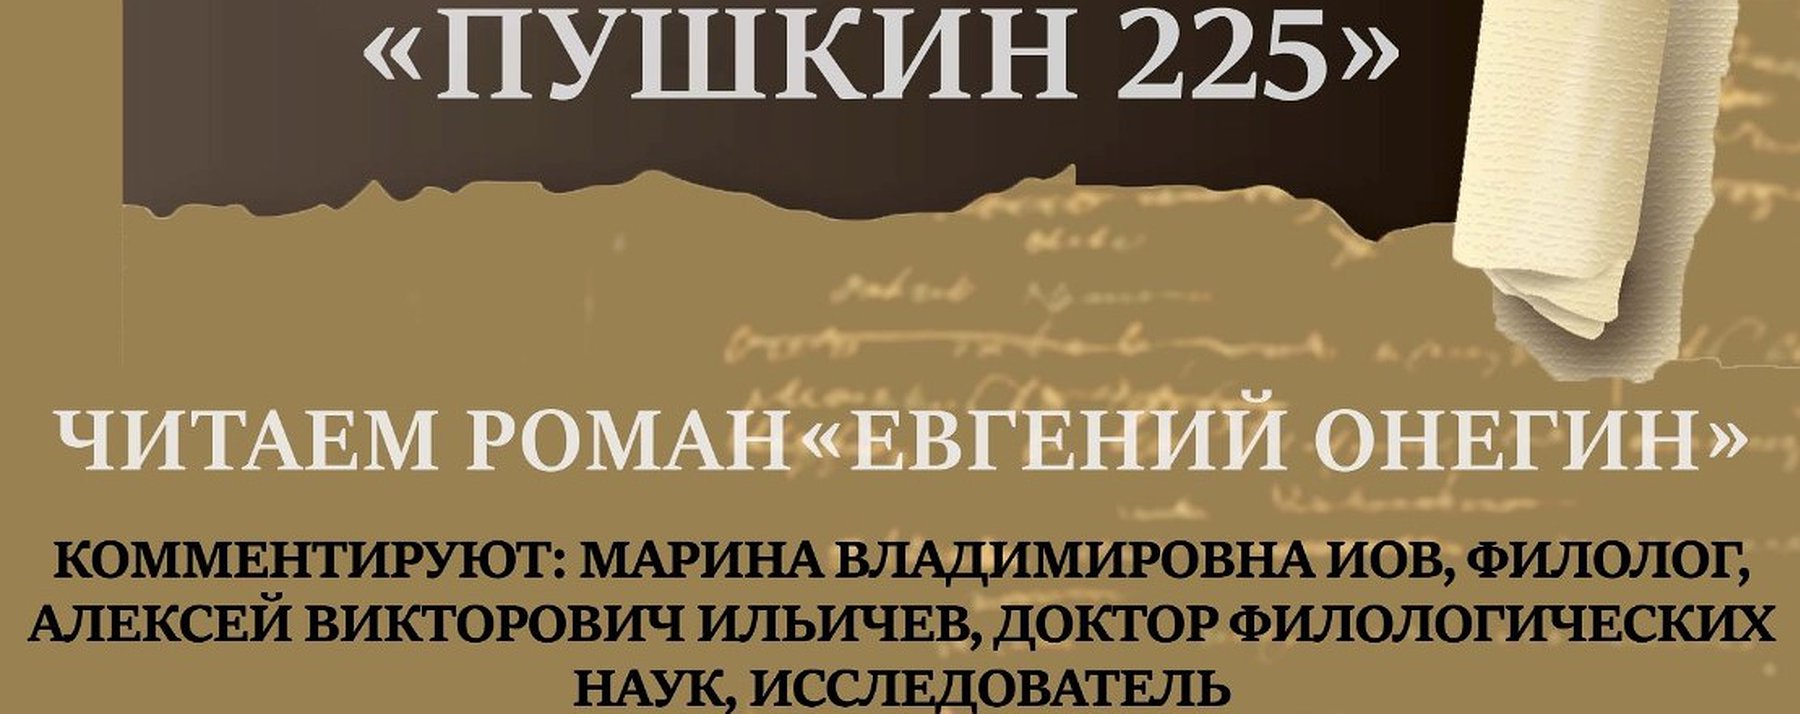 Конкурс пушкин 225. Пушкин 225. 225 Лет Пушкину в 2024 году. Логотип Пушкин 225. 2024 Пушкин 225 лет.